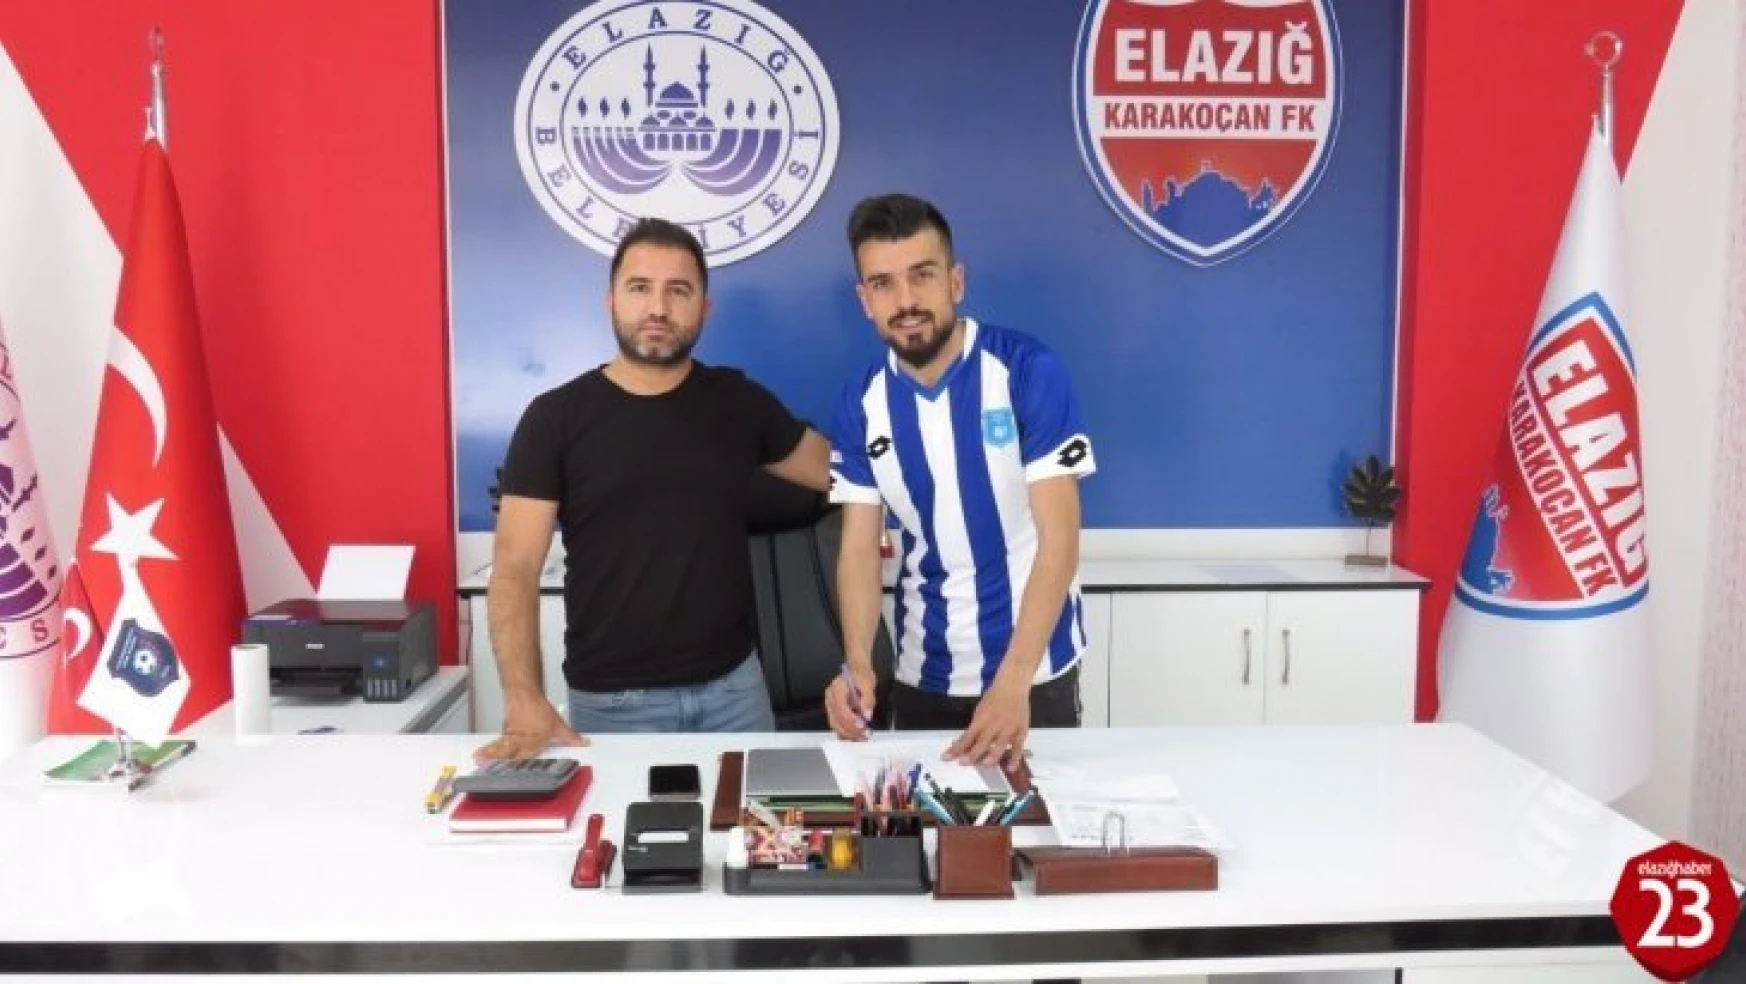 Elazığ Karakoçan FK, Transferde Hız Kesmiyor